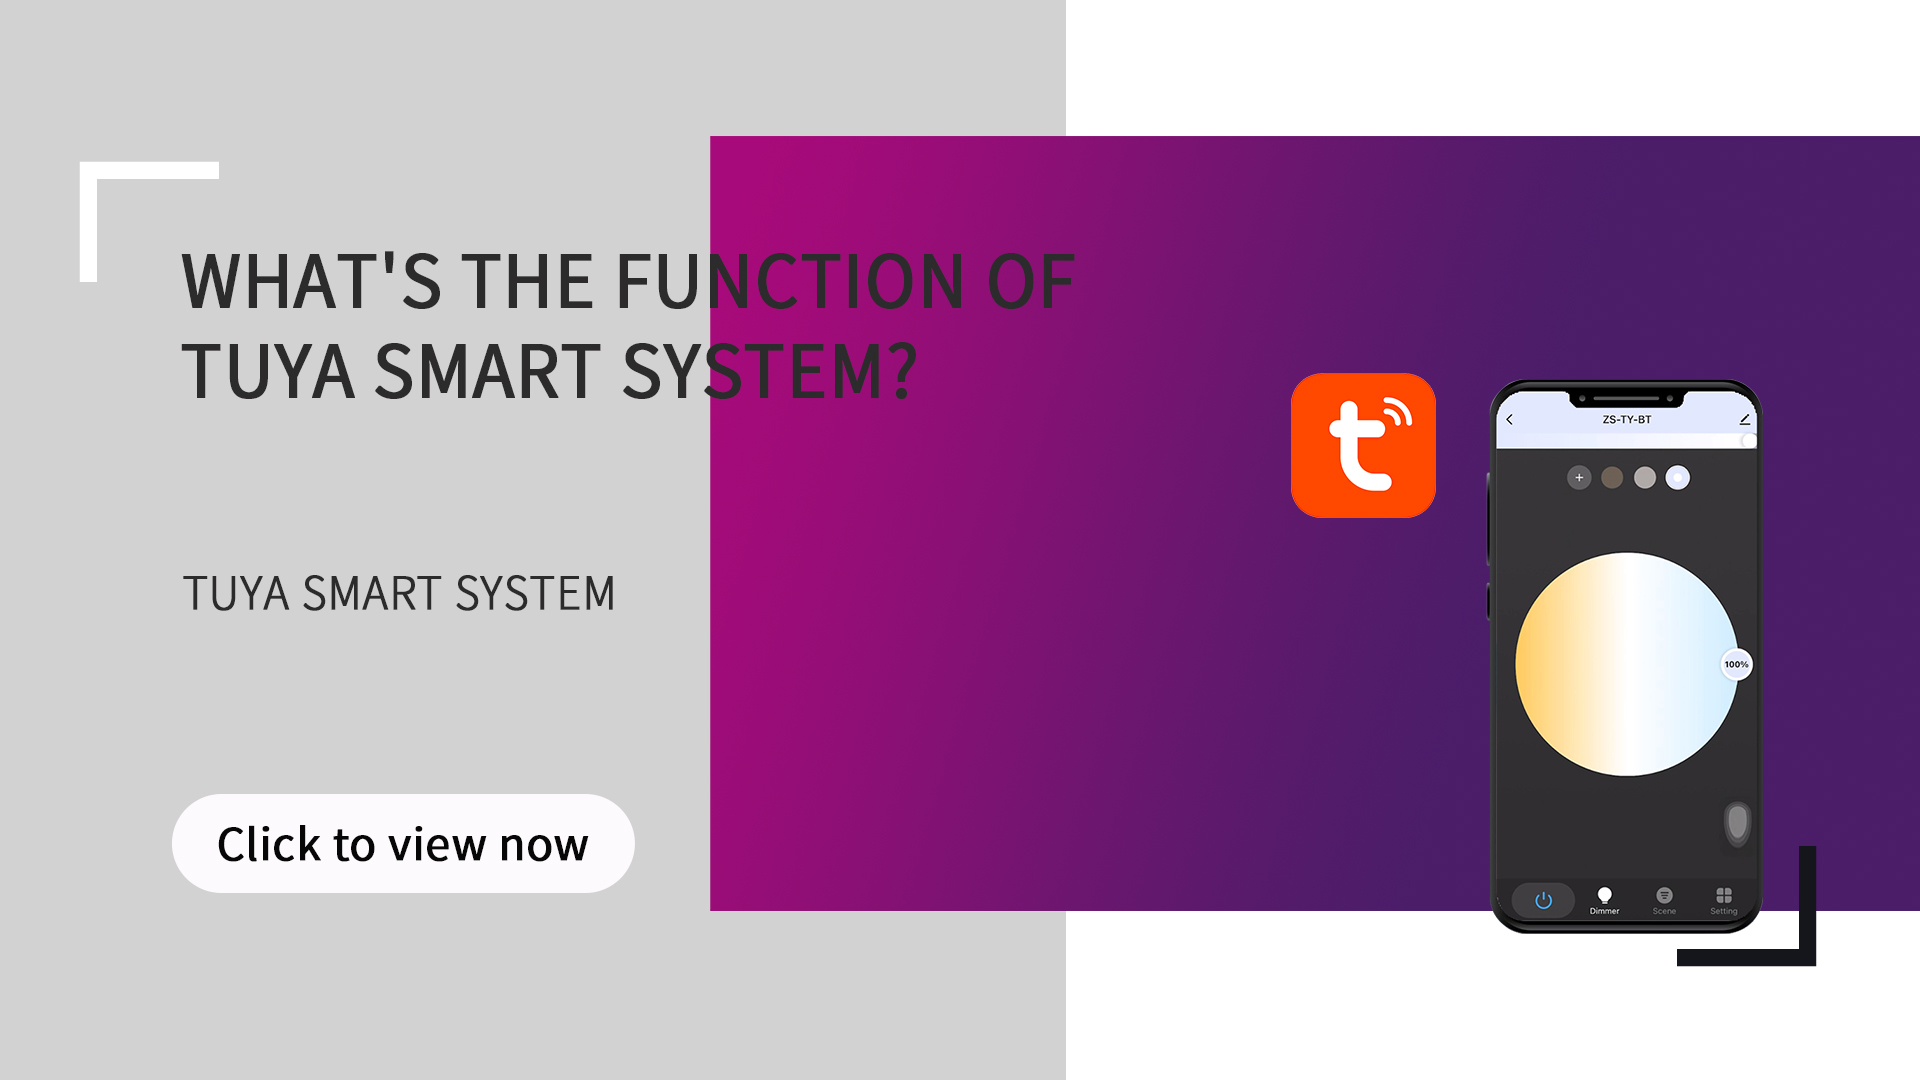 Mi a funkció a Tuya Smart rendszerben?